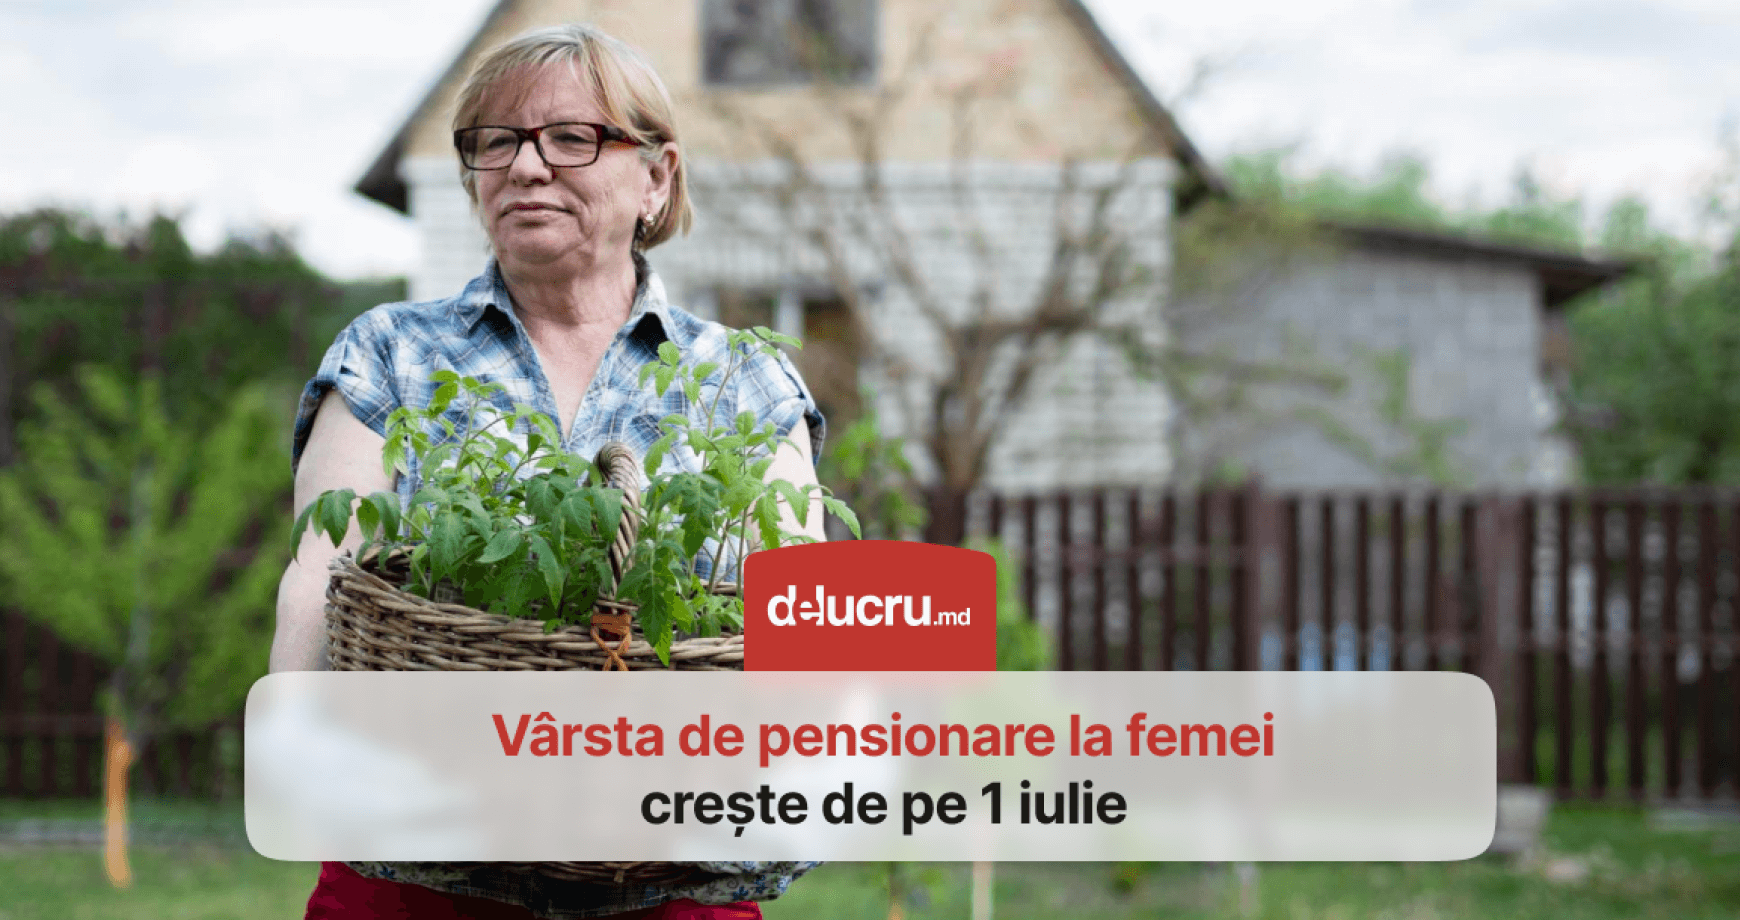 Din 1 iulie, vârsta de pensionare pentru femeile din Moldova este de 61 de ani